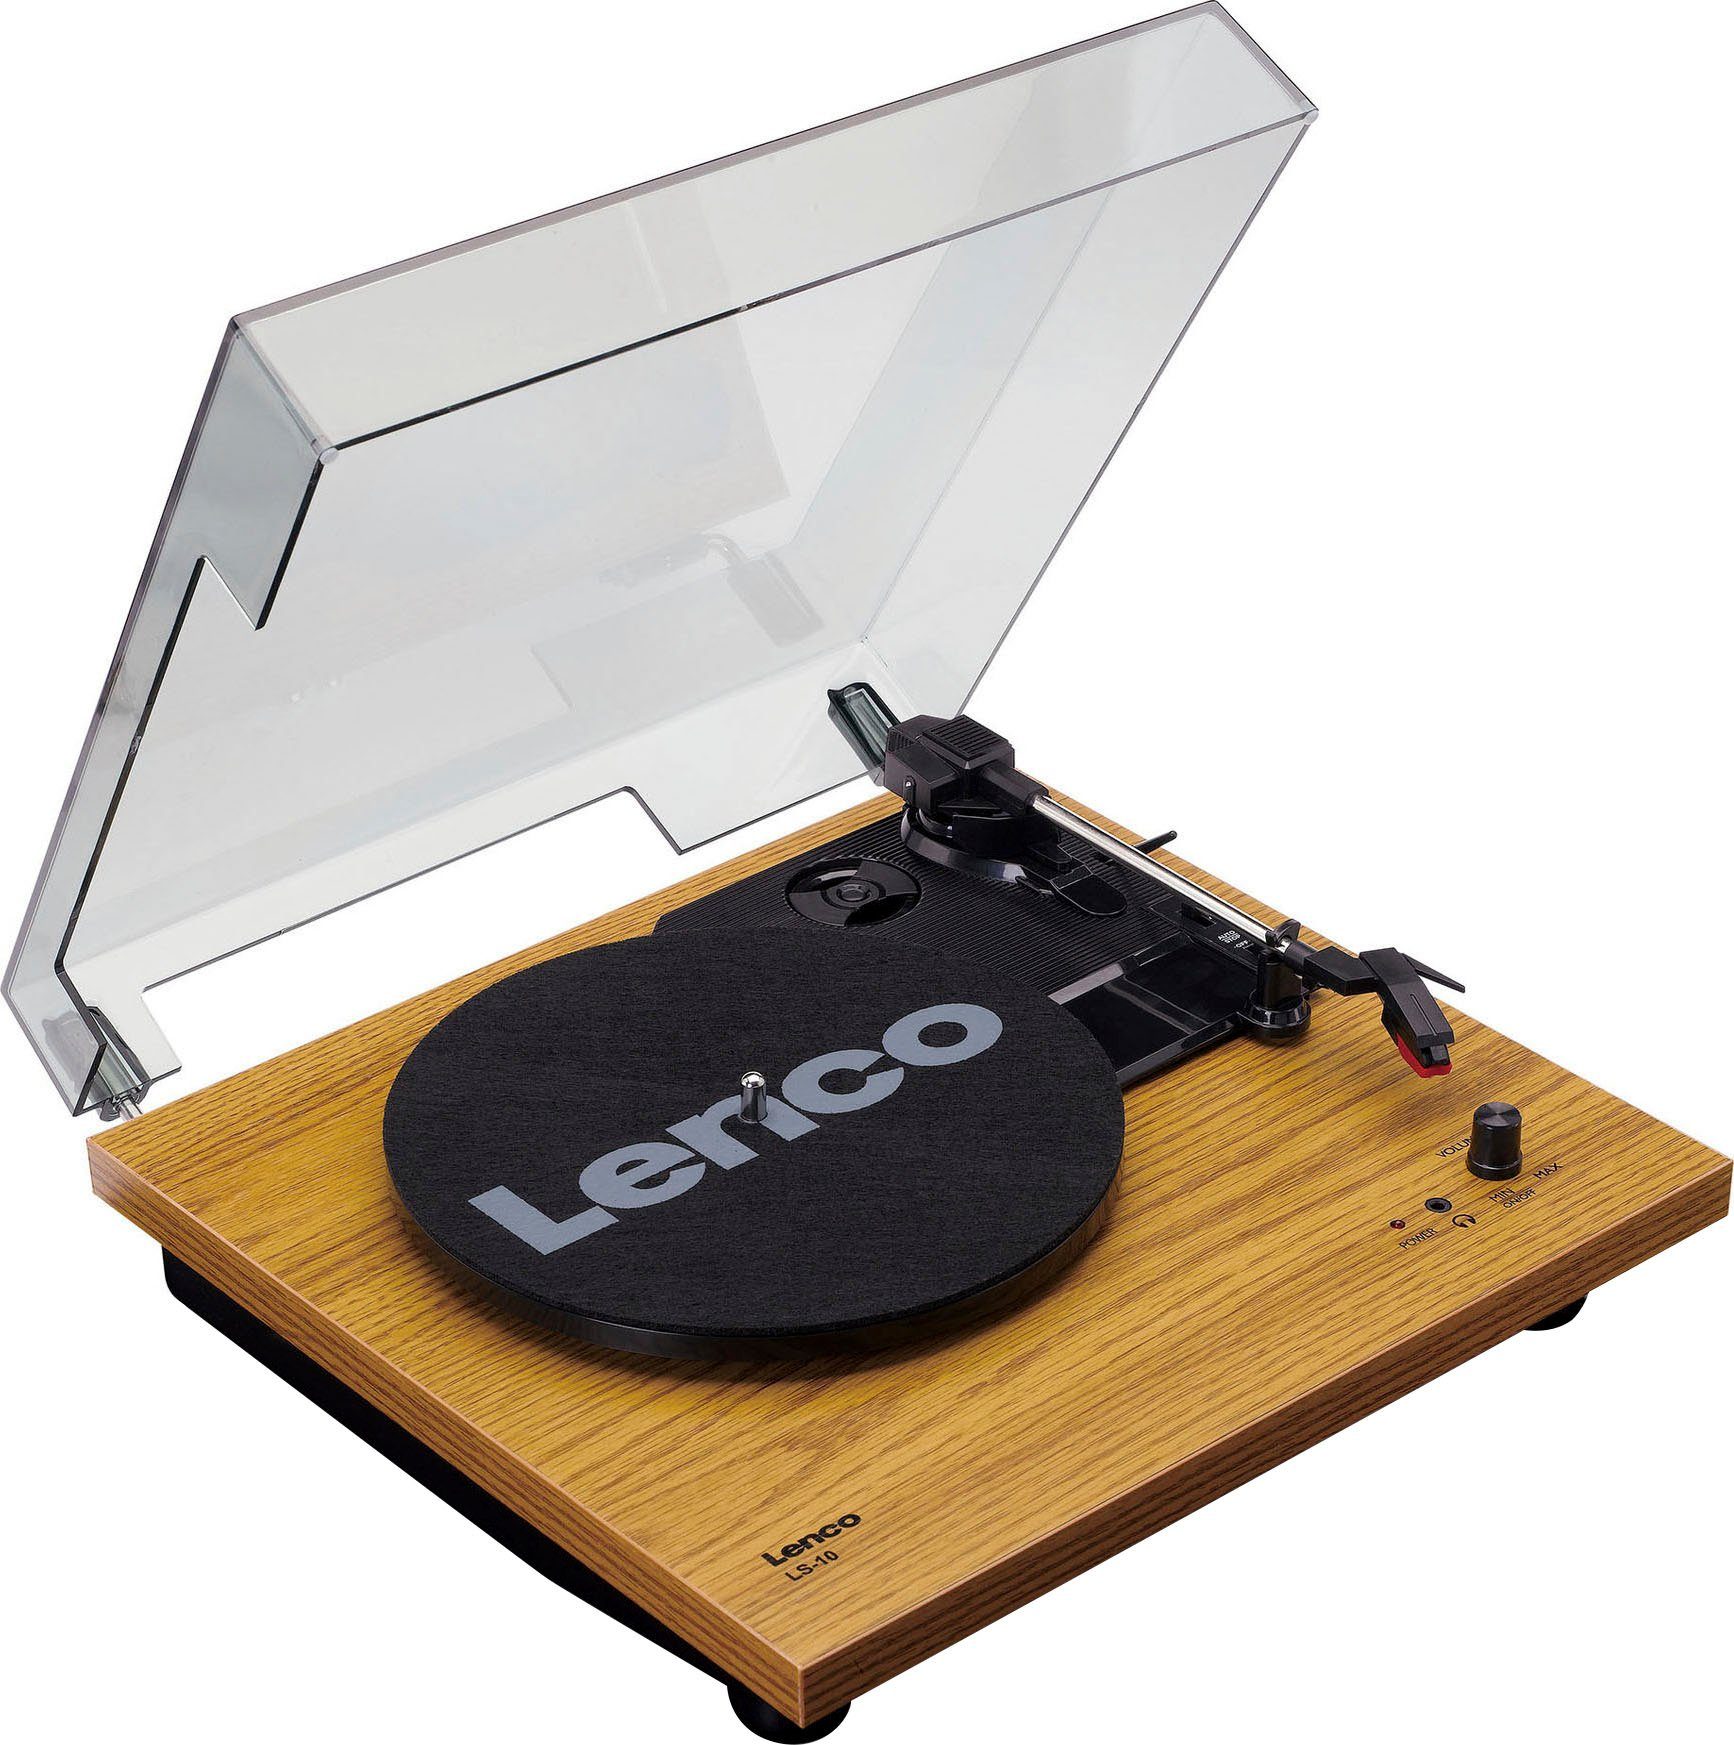 Plattenspieler (Weiß/Holz) Lenco Plattenspieler mit Lautsprechern (Riemenantrieb) LS-10WD